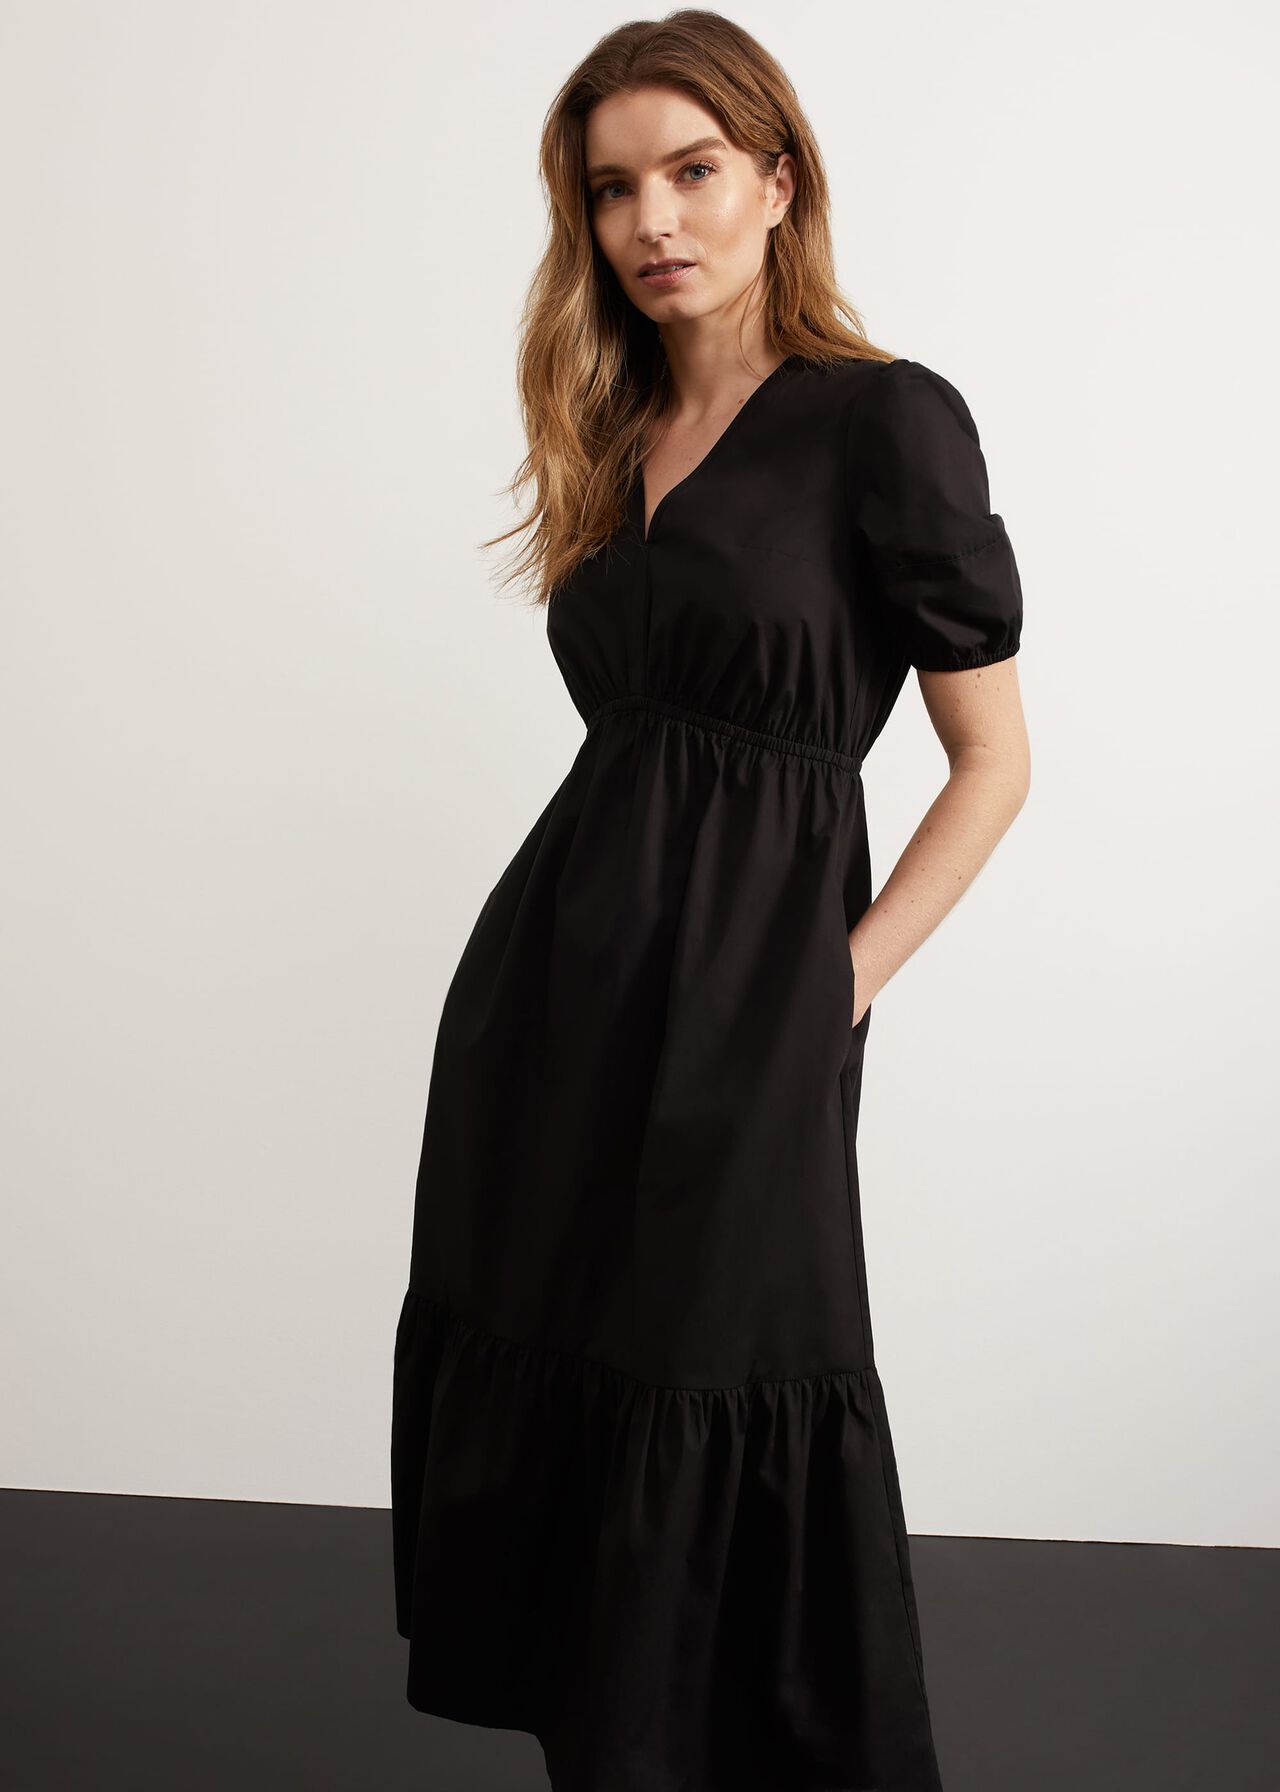 Meadley Dress, Black, hi-res